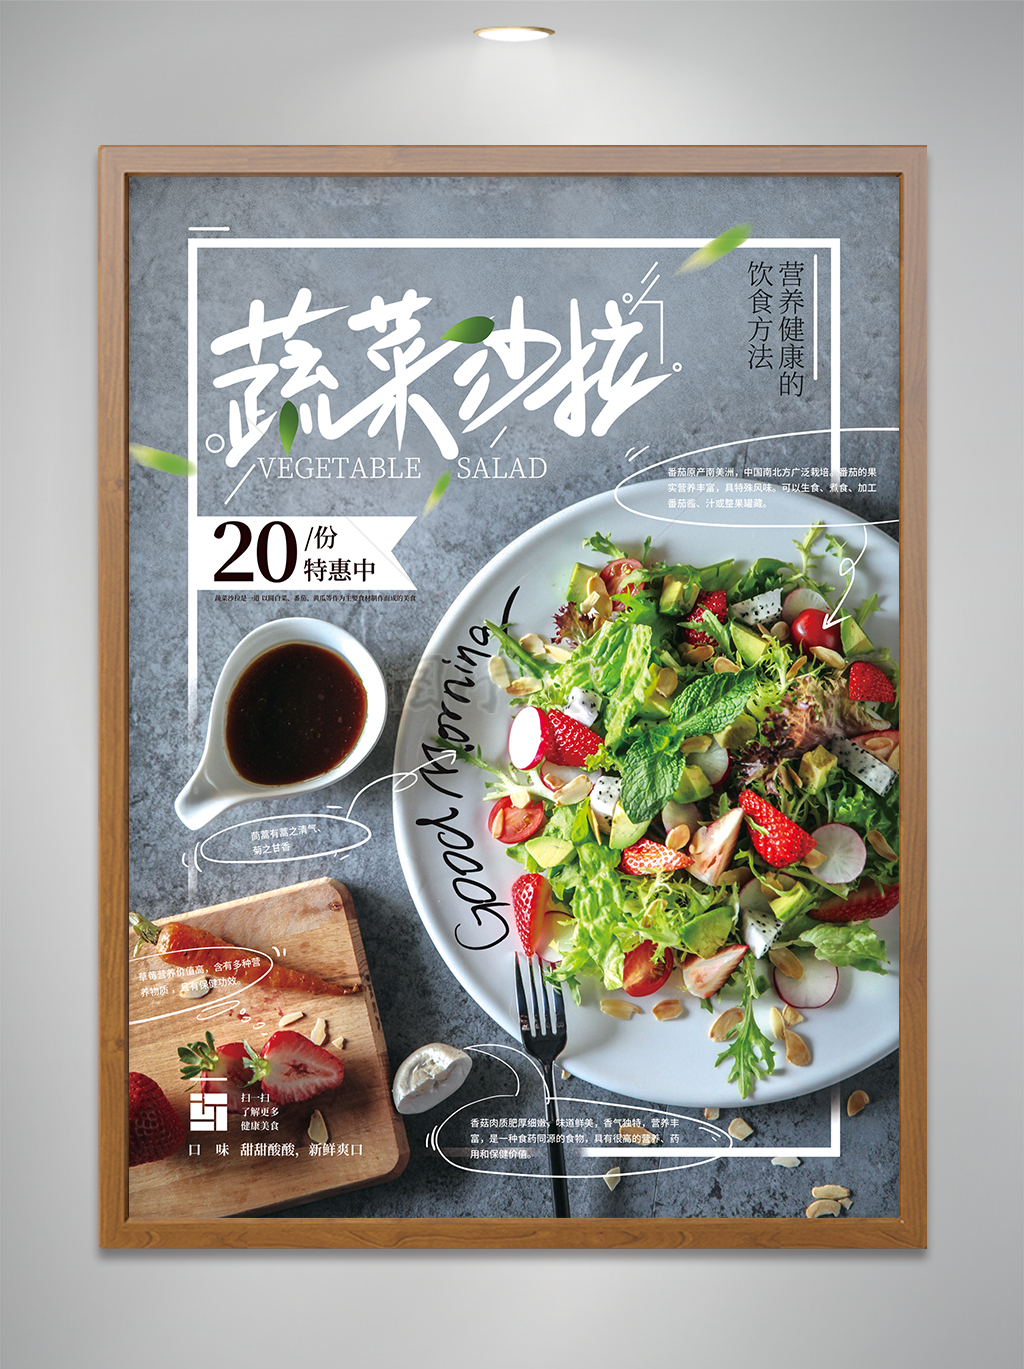 蔬菜沙拉西餐美食宣传海报设计